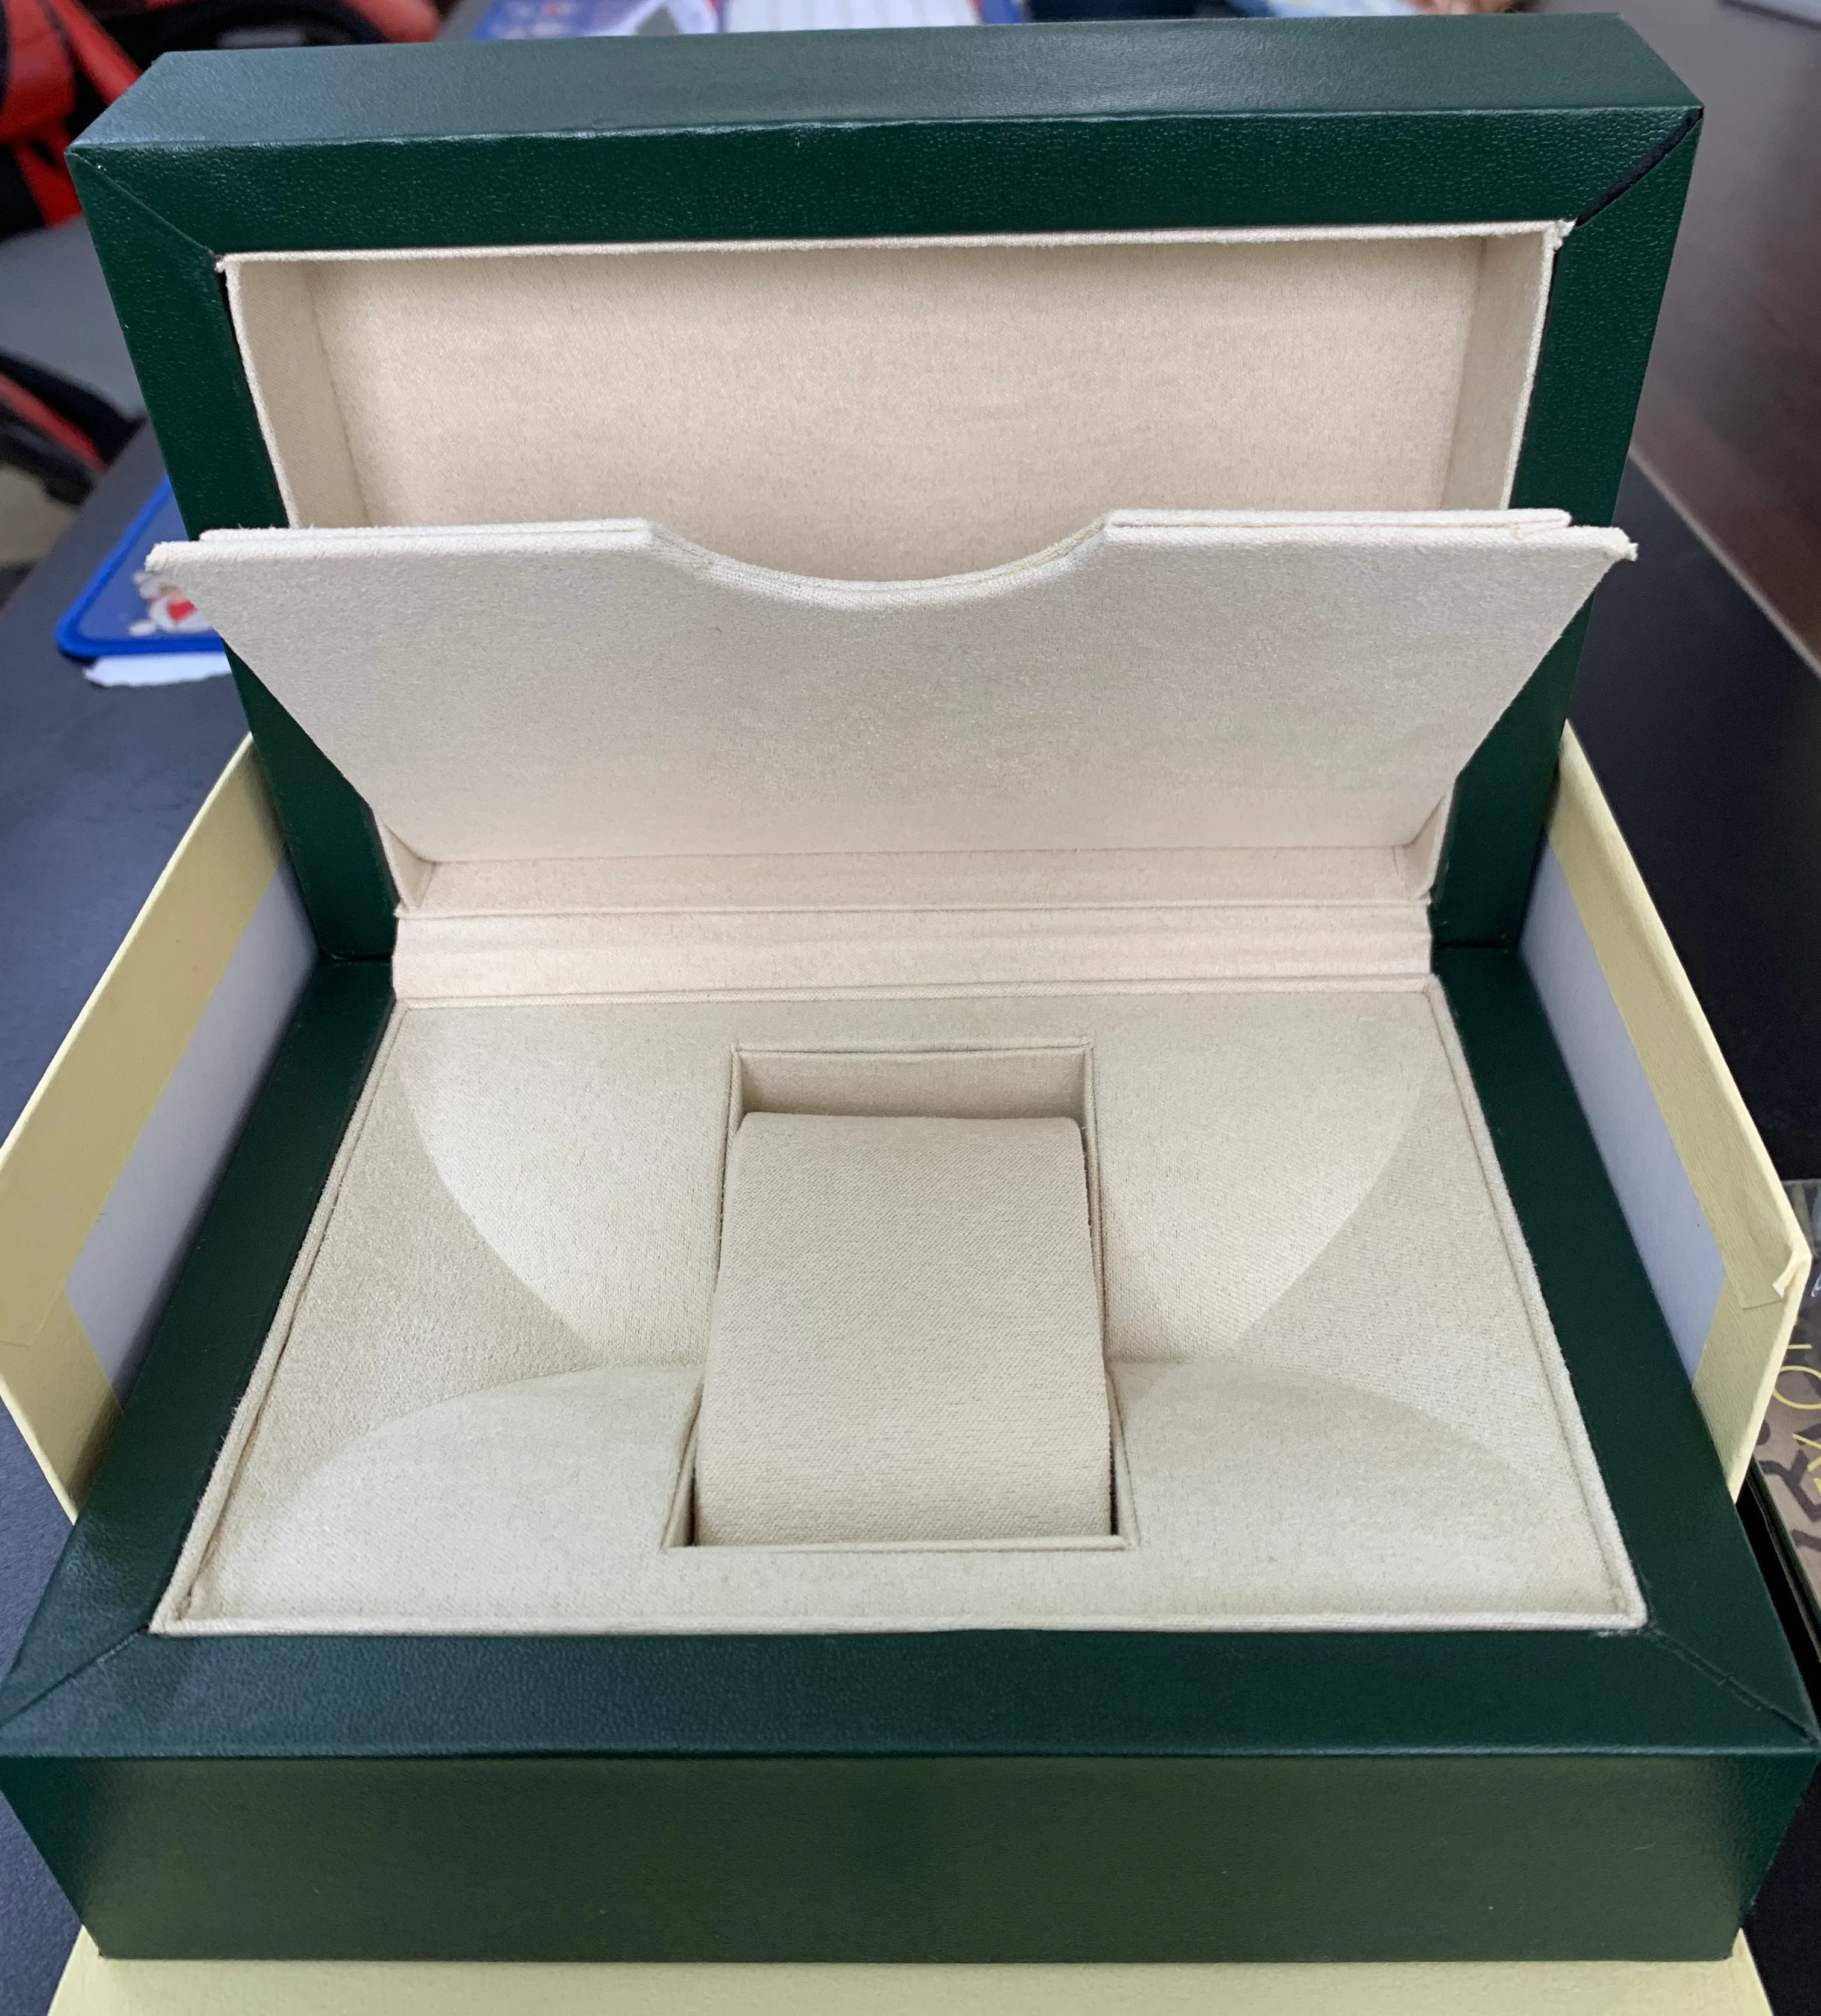 Gli accessori per la scatola porta orologi delle migliori marche verdi non sono venduti separatamente, devono essere ordinati insieme all'orologio, per favore capisci